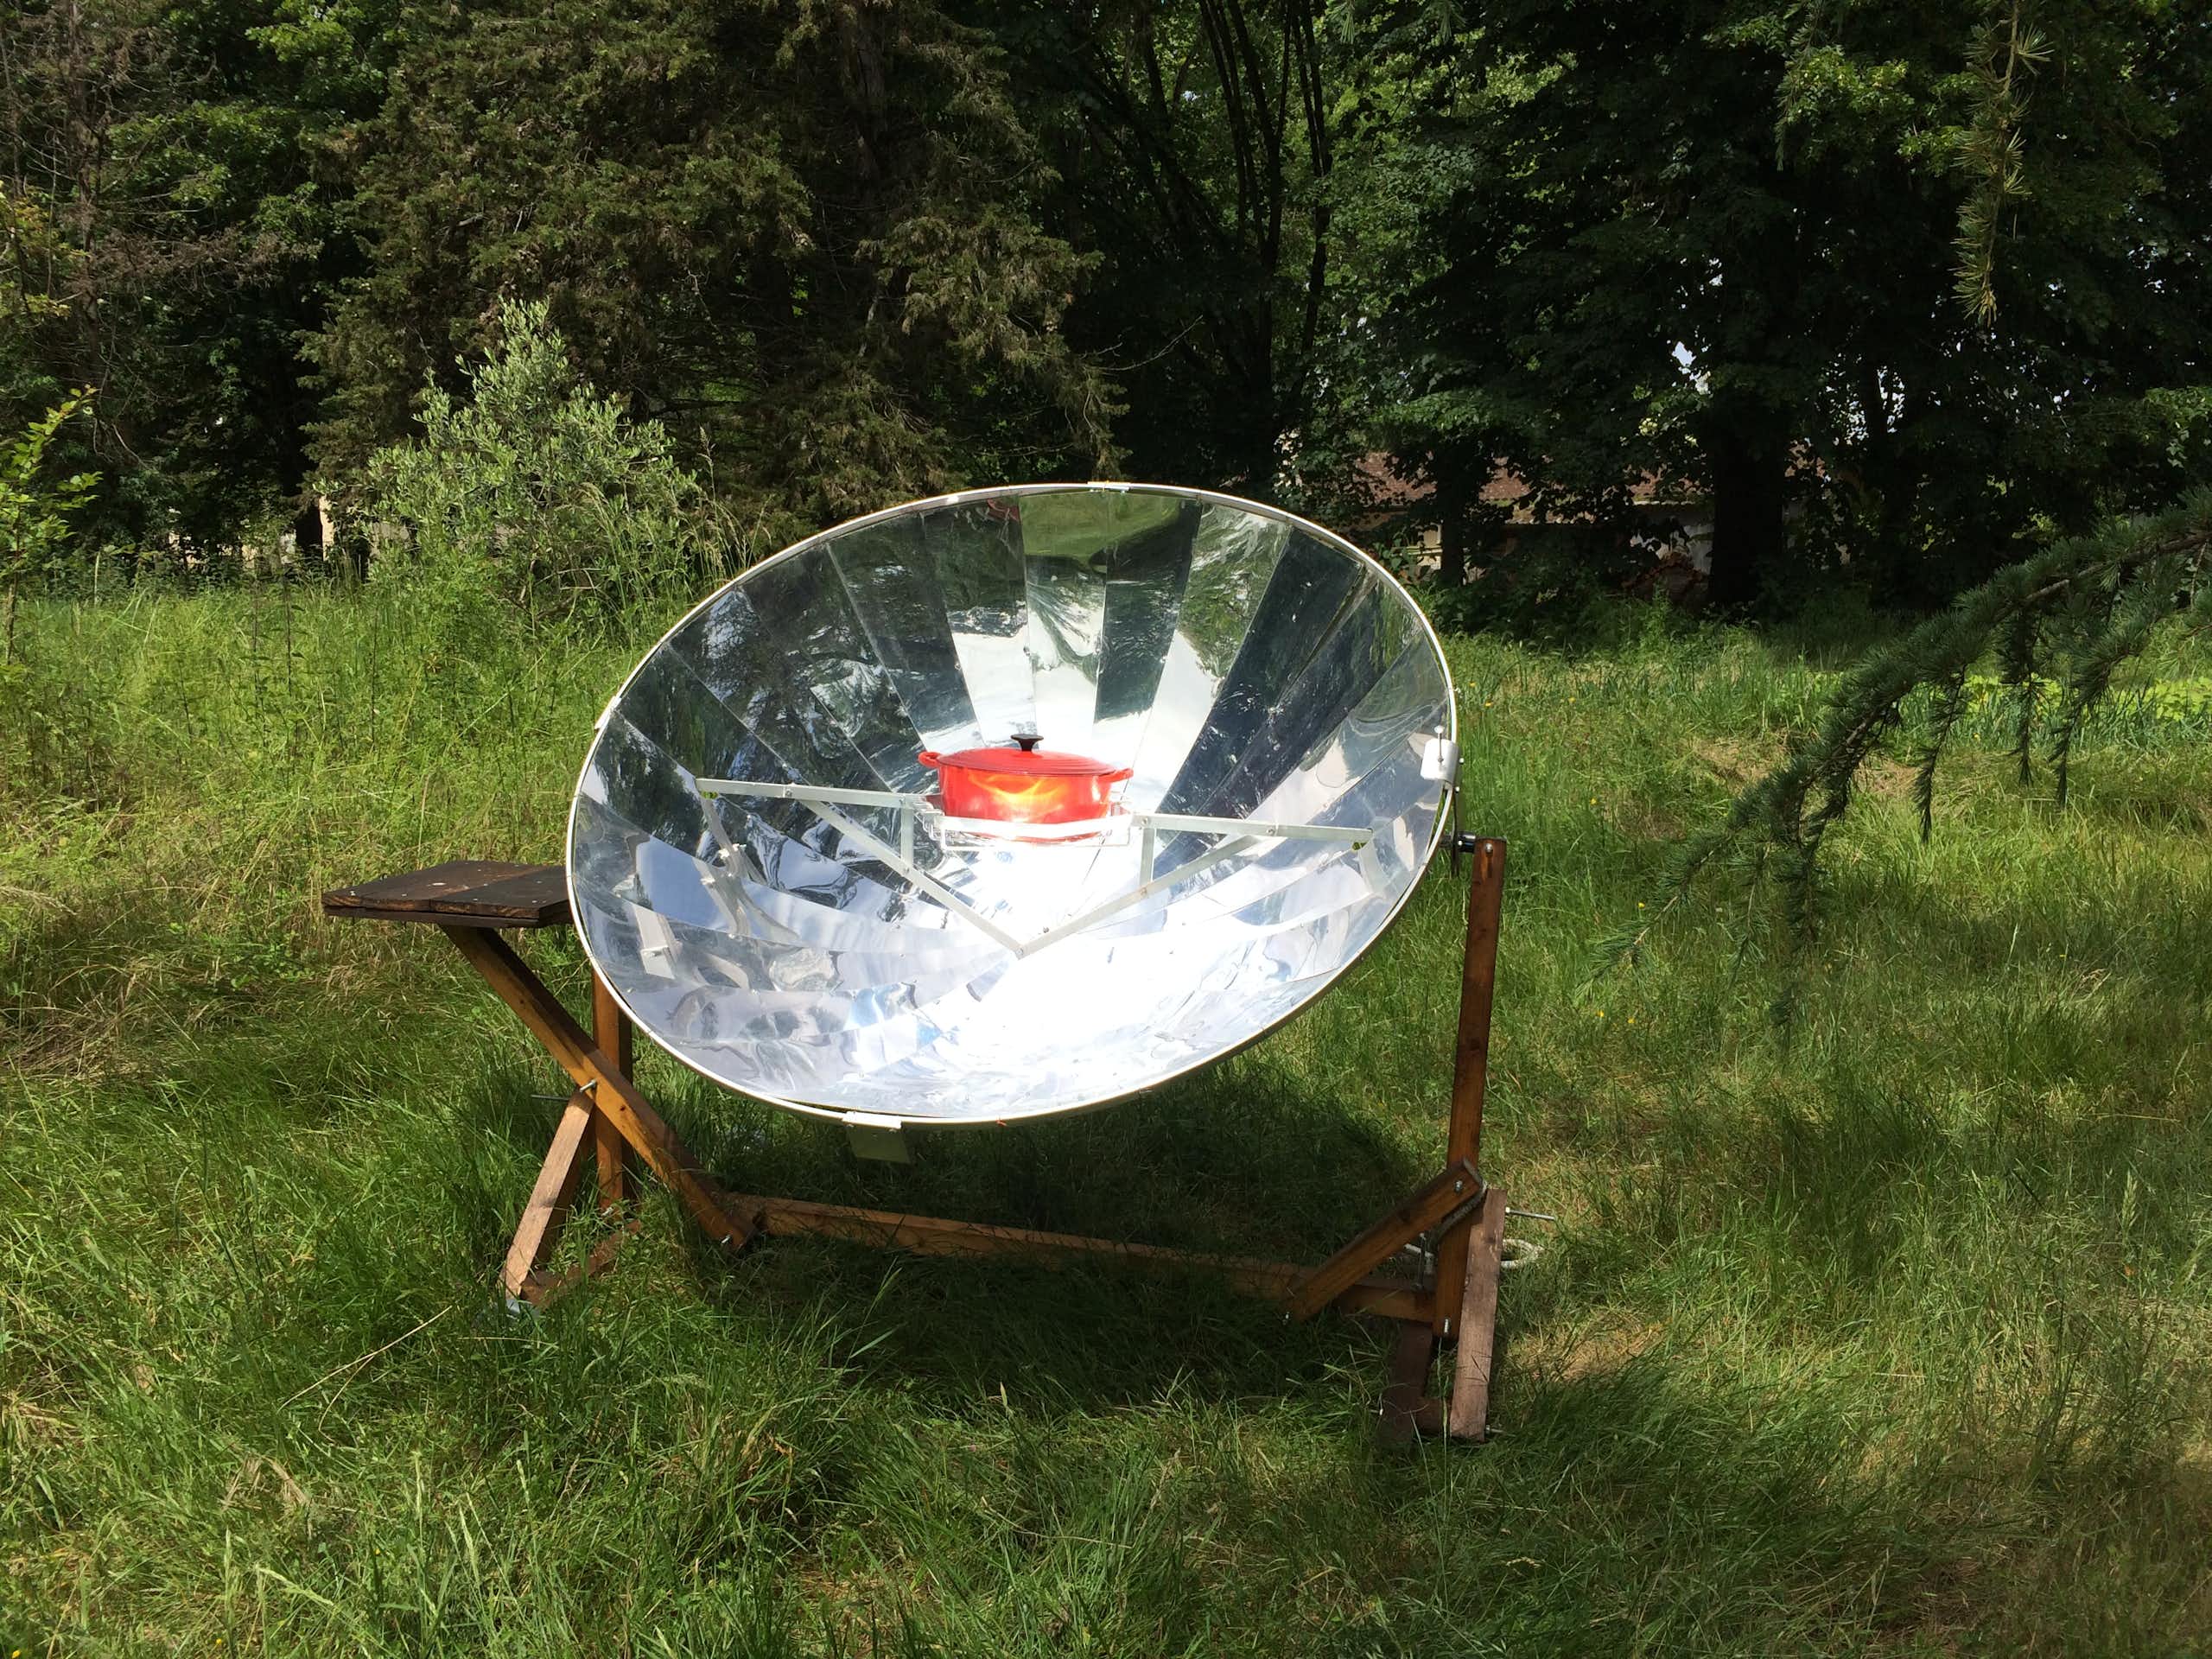 Décarboner notre façon de cuisiner : la parabole solaire est-elle une bonne option ?